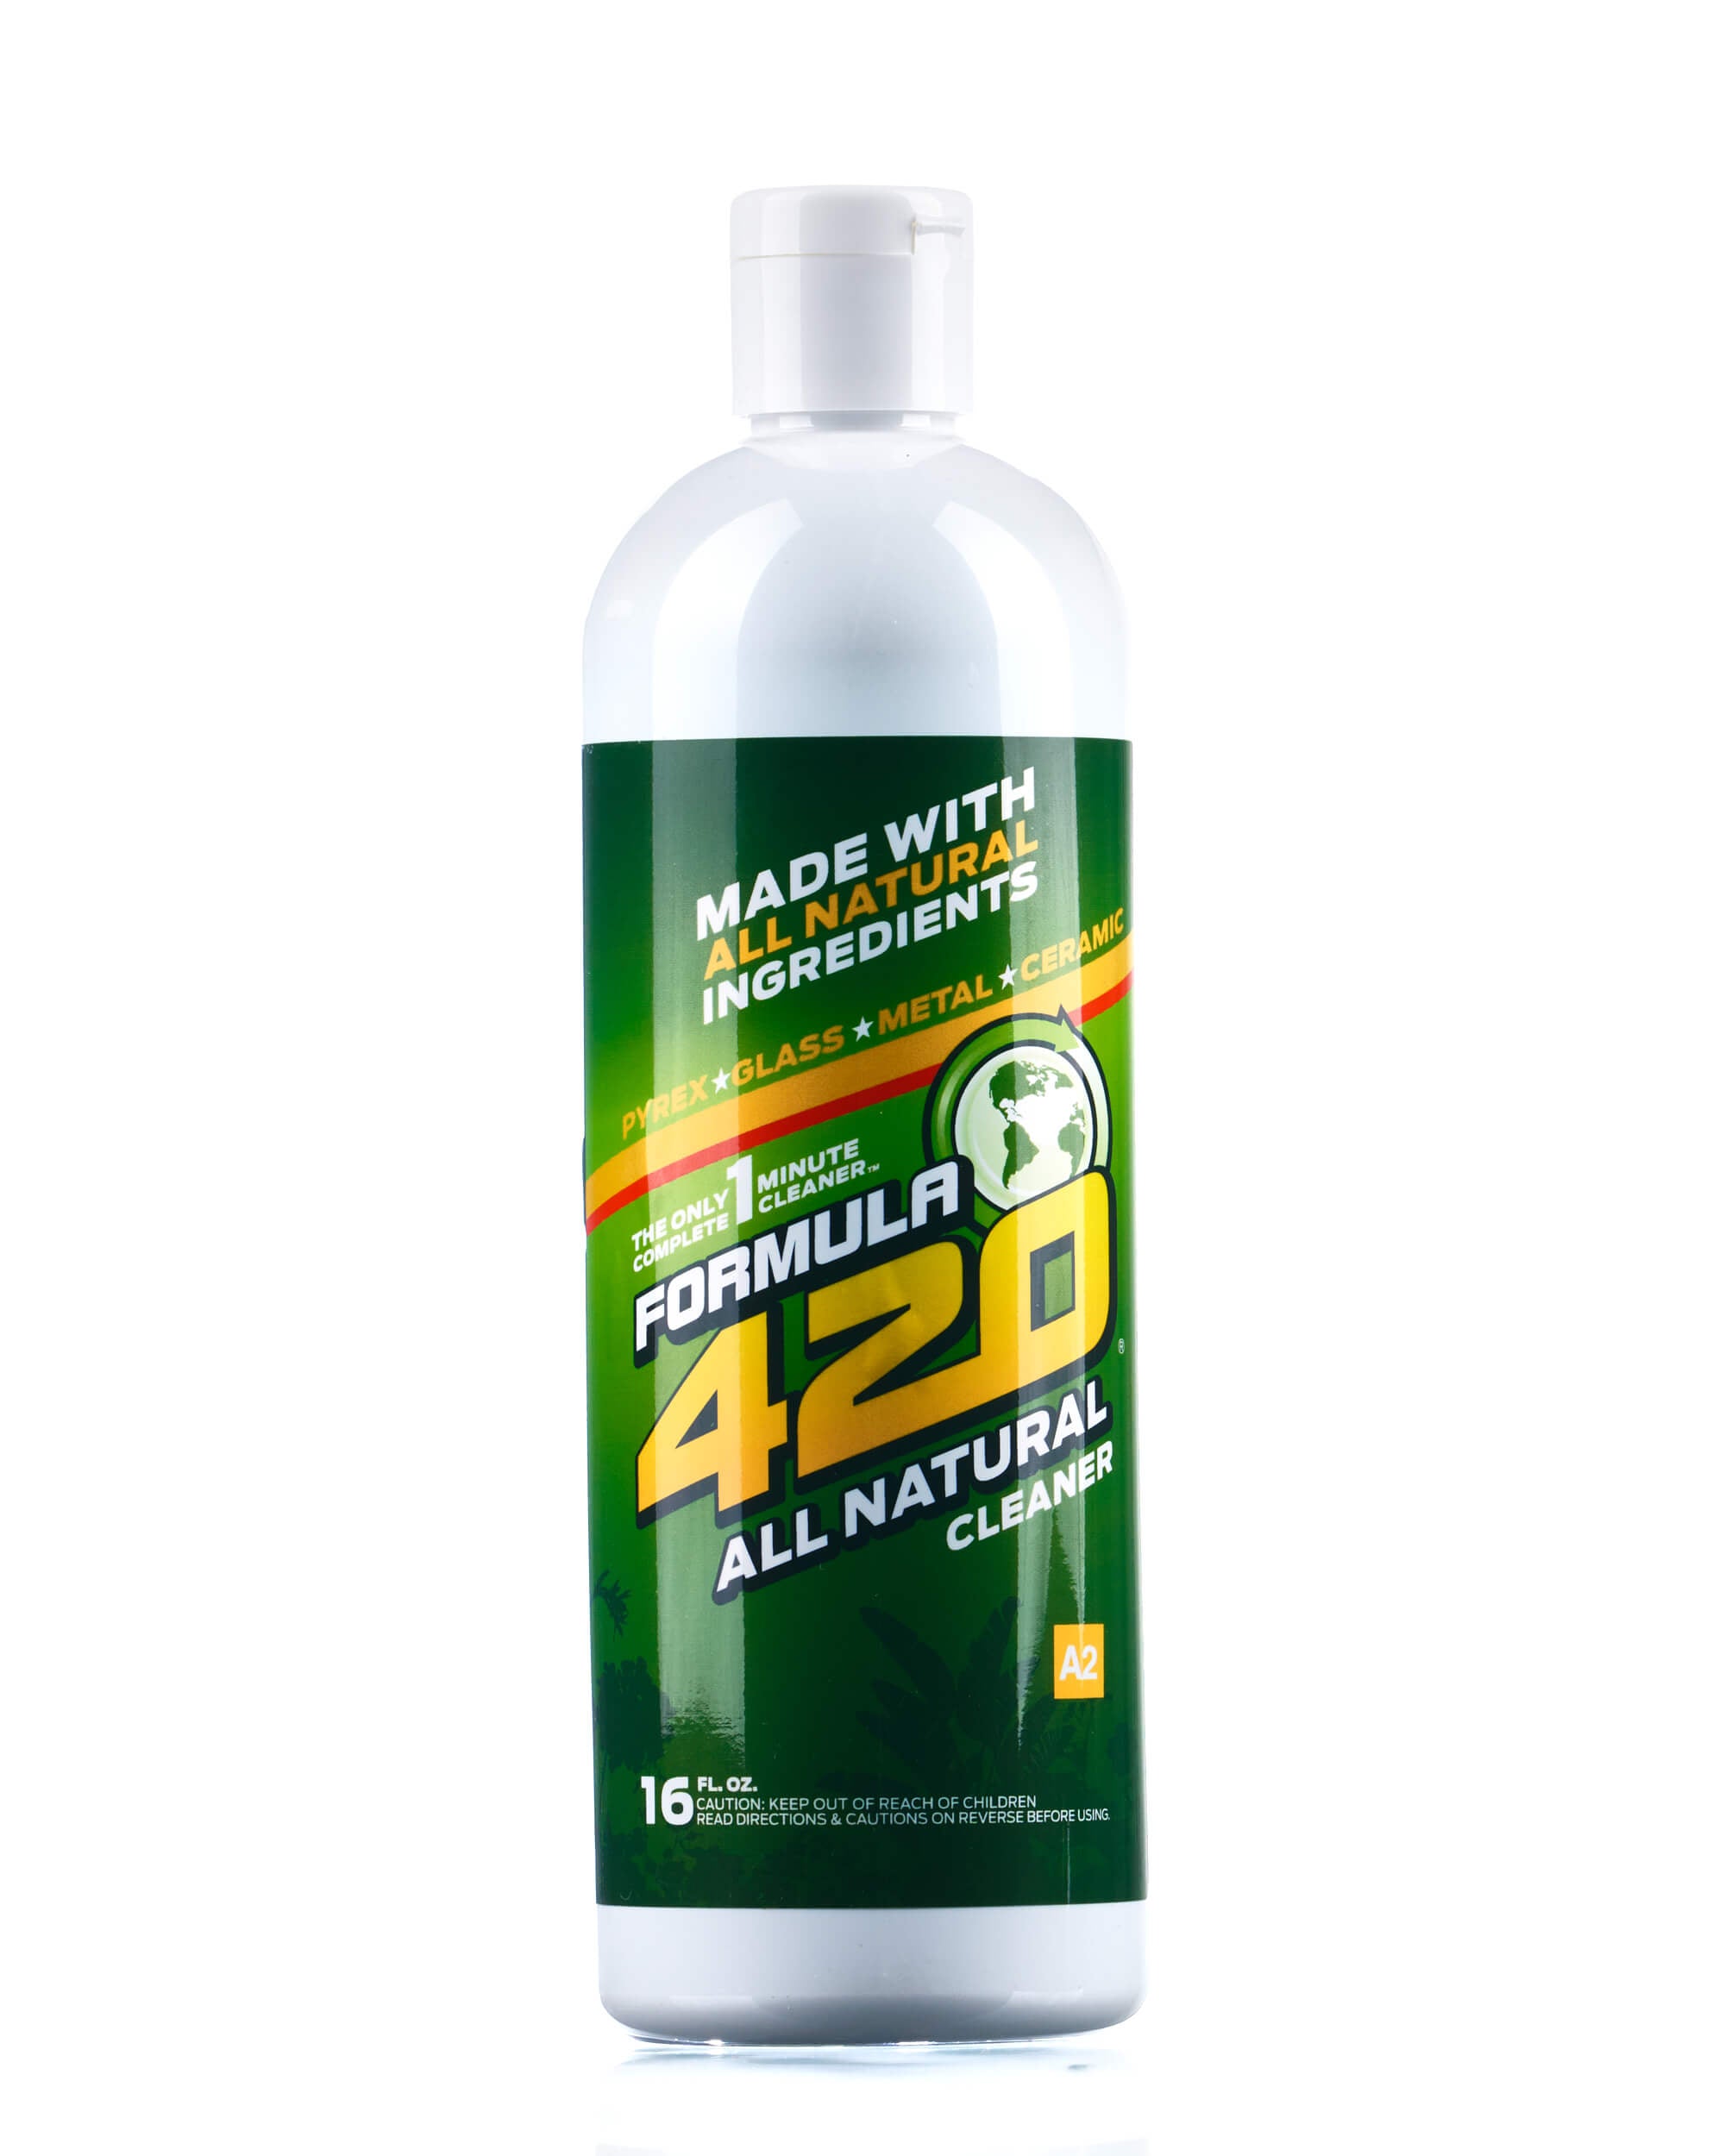 Formula 710 Instant Cleaner 4oz